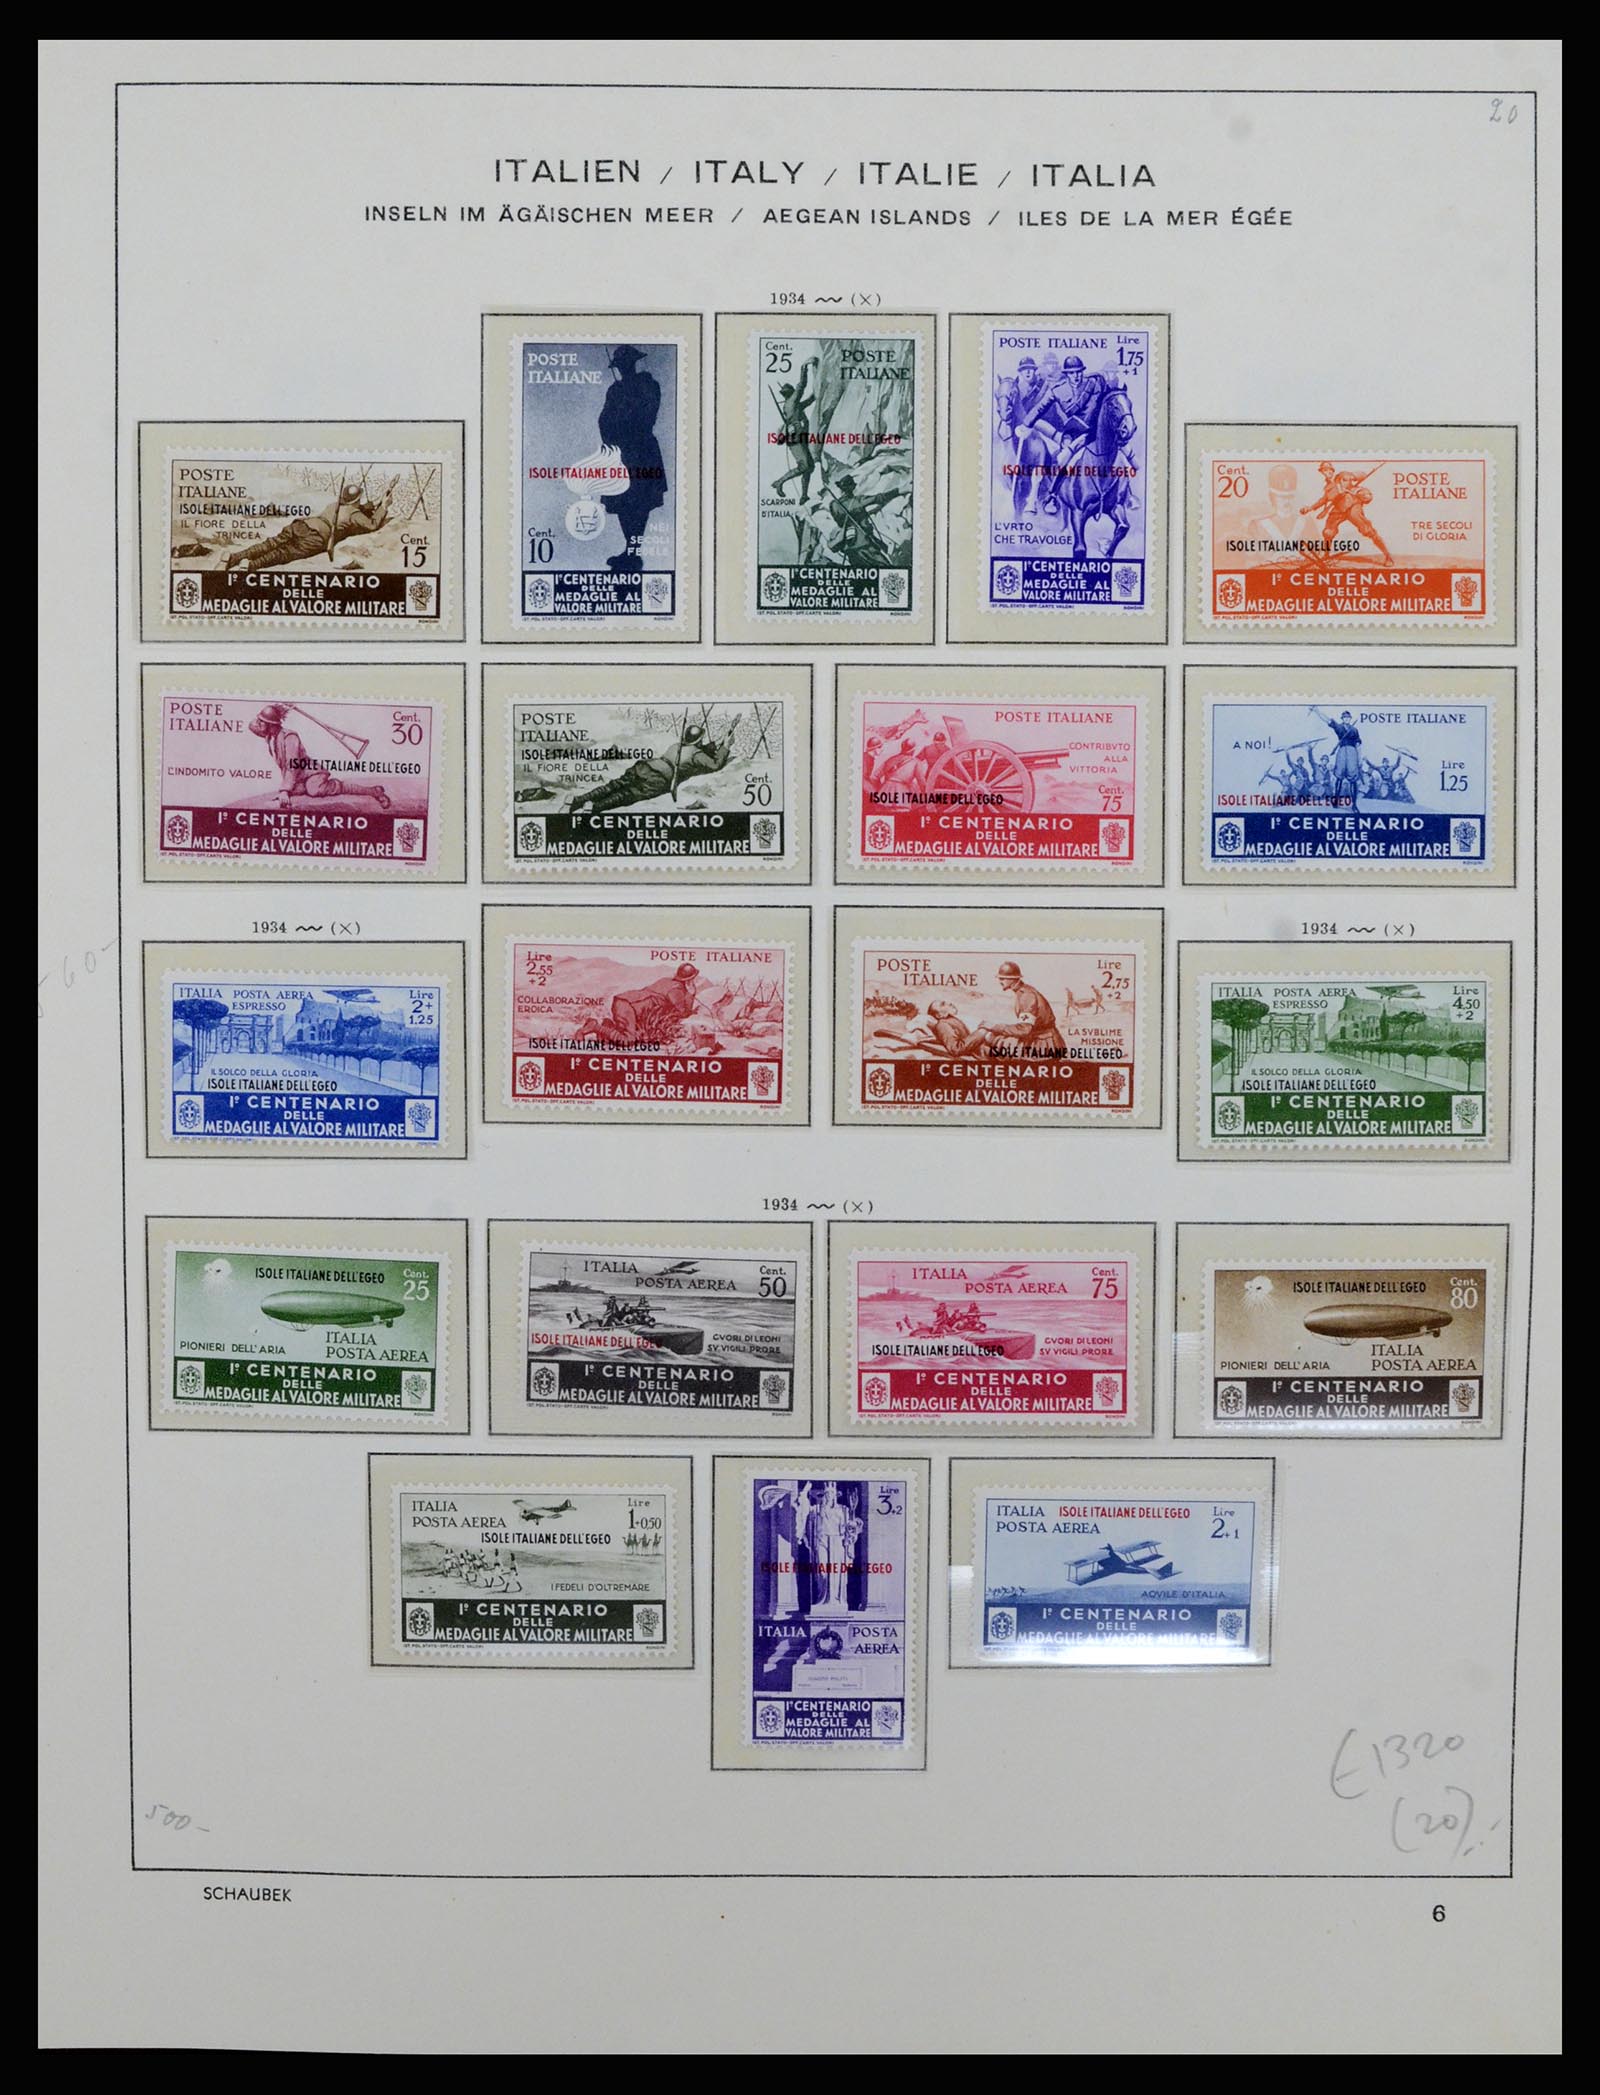 36577 032 - Stamp collection 36577 Italiaanse gebieden 1870-1940.